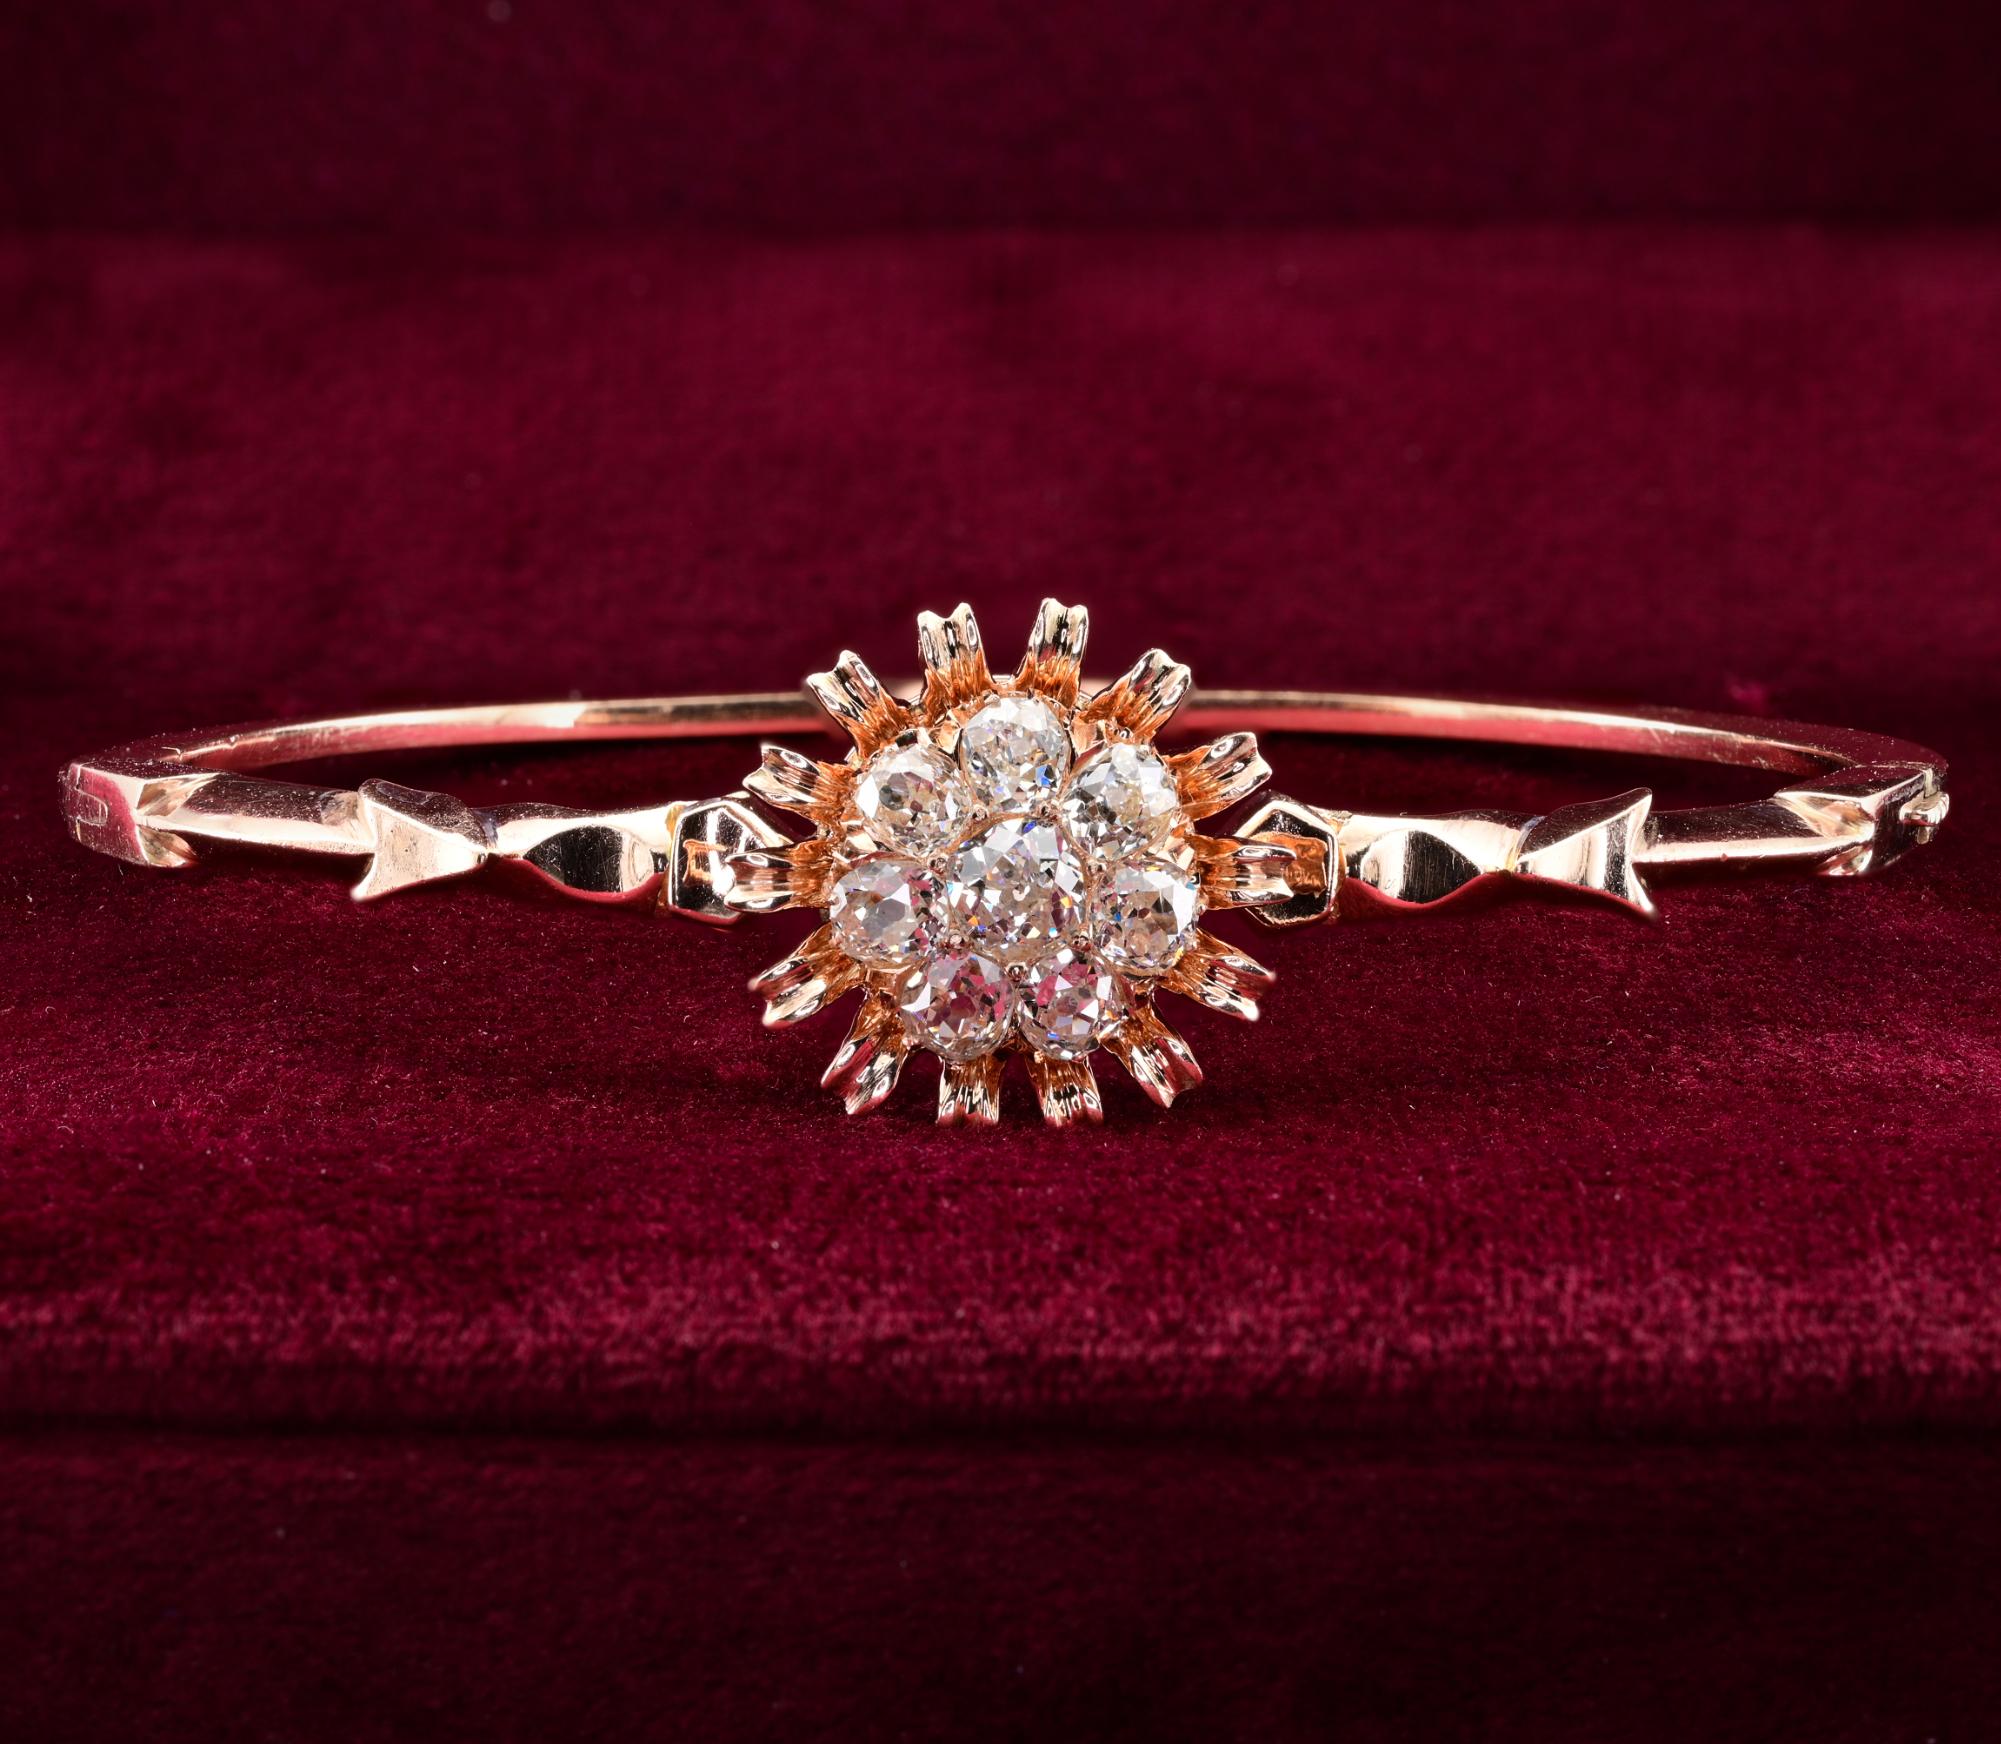 Ce charmant bracelet de l'époque victorienne est daté de 1890.
Or massif 15 KT façonné à la main
Exquise conception simple et efficace avec des flèches sur les épaules embrassant la riche grappe de diamants encerclée par de charmants petits pétales